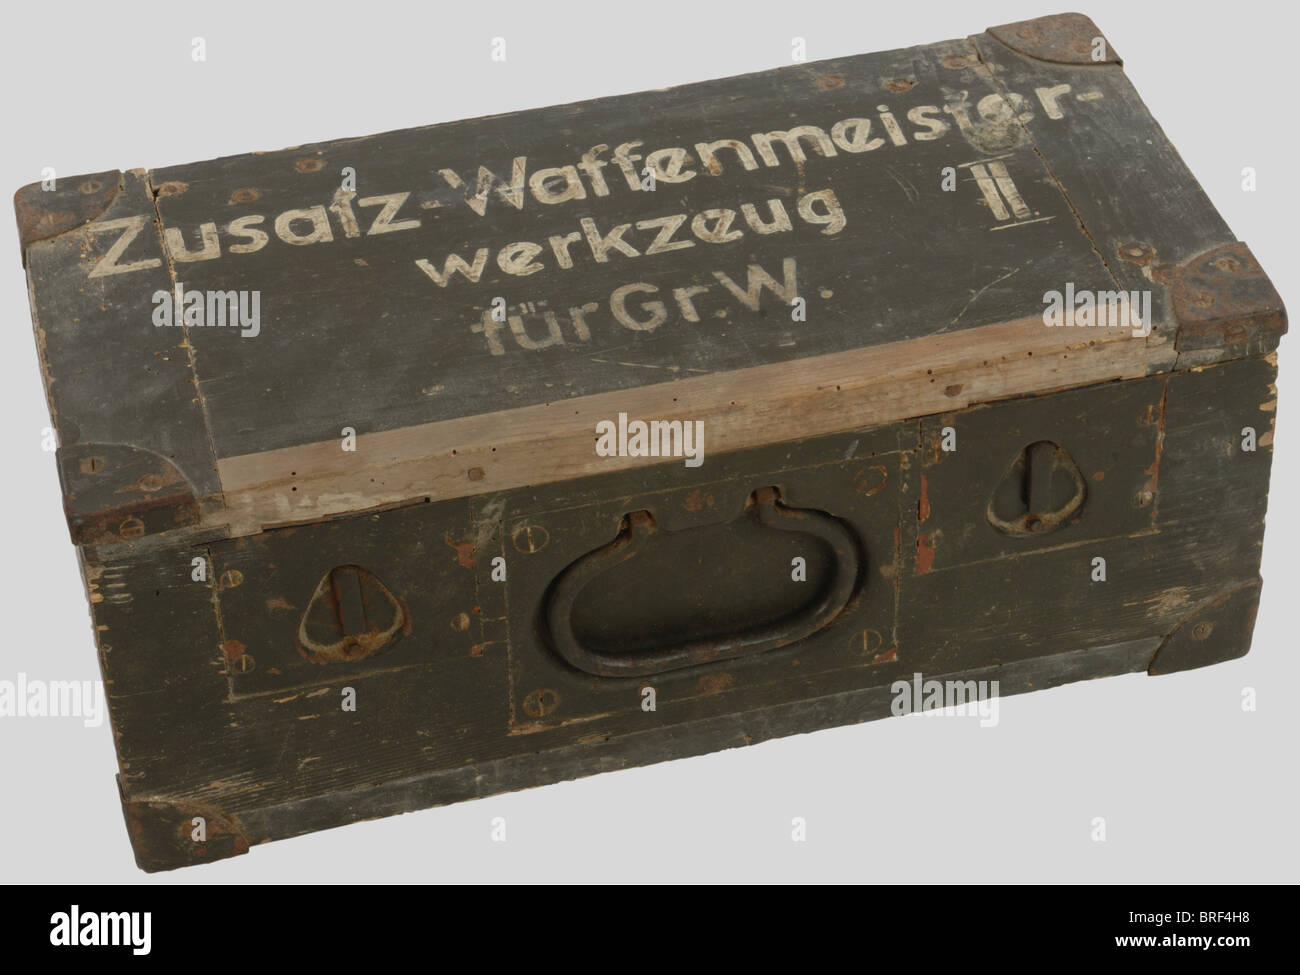 Caisses de Munitions, Caisse d'armurier, du deuxième échelon en bois feldgrau à cornières renforcées, compartimentée à l'intérieur et contenant l'outillage spécifique à la réparation du mortier de 8cm.S.Gr.W.34 (tarauds, clef etc.). Incomplète, en très bel état, quelques outils réceptionnés 'Wa.A.', couvercle marqué au pochoir à la peinture blanche 'ZUSATZ-WAFFENMEISTER WERKZEUG FUR Gr.W.II'., , Stock Photo